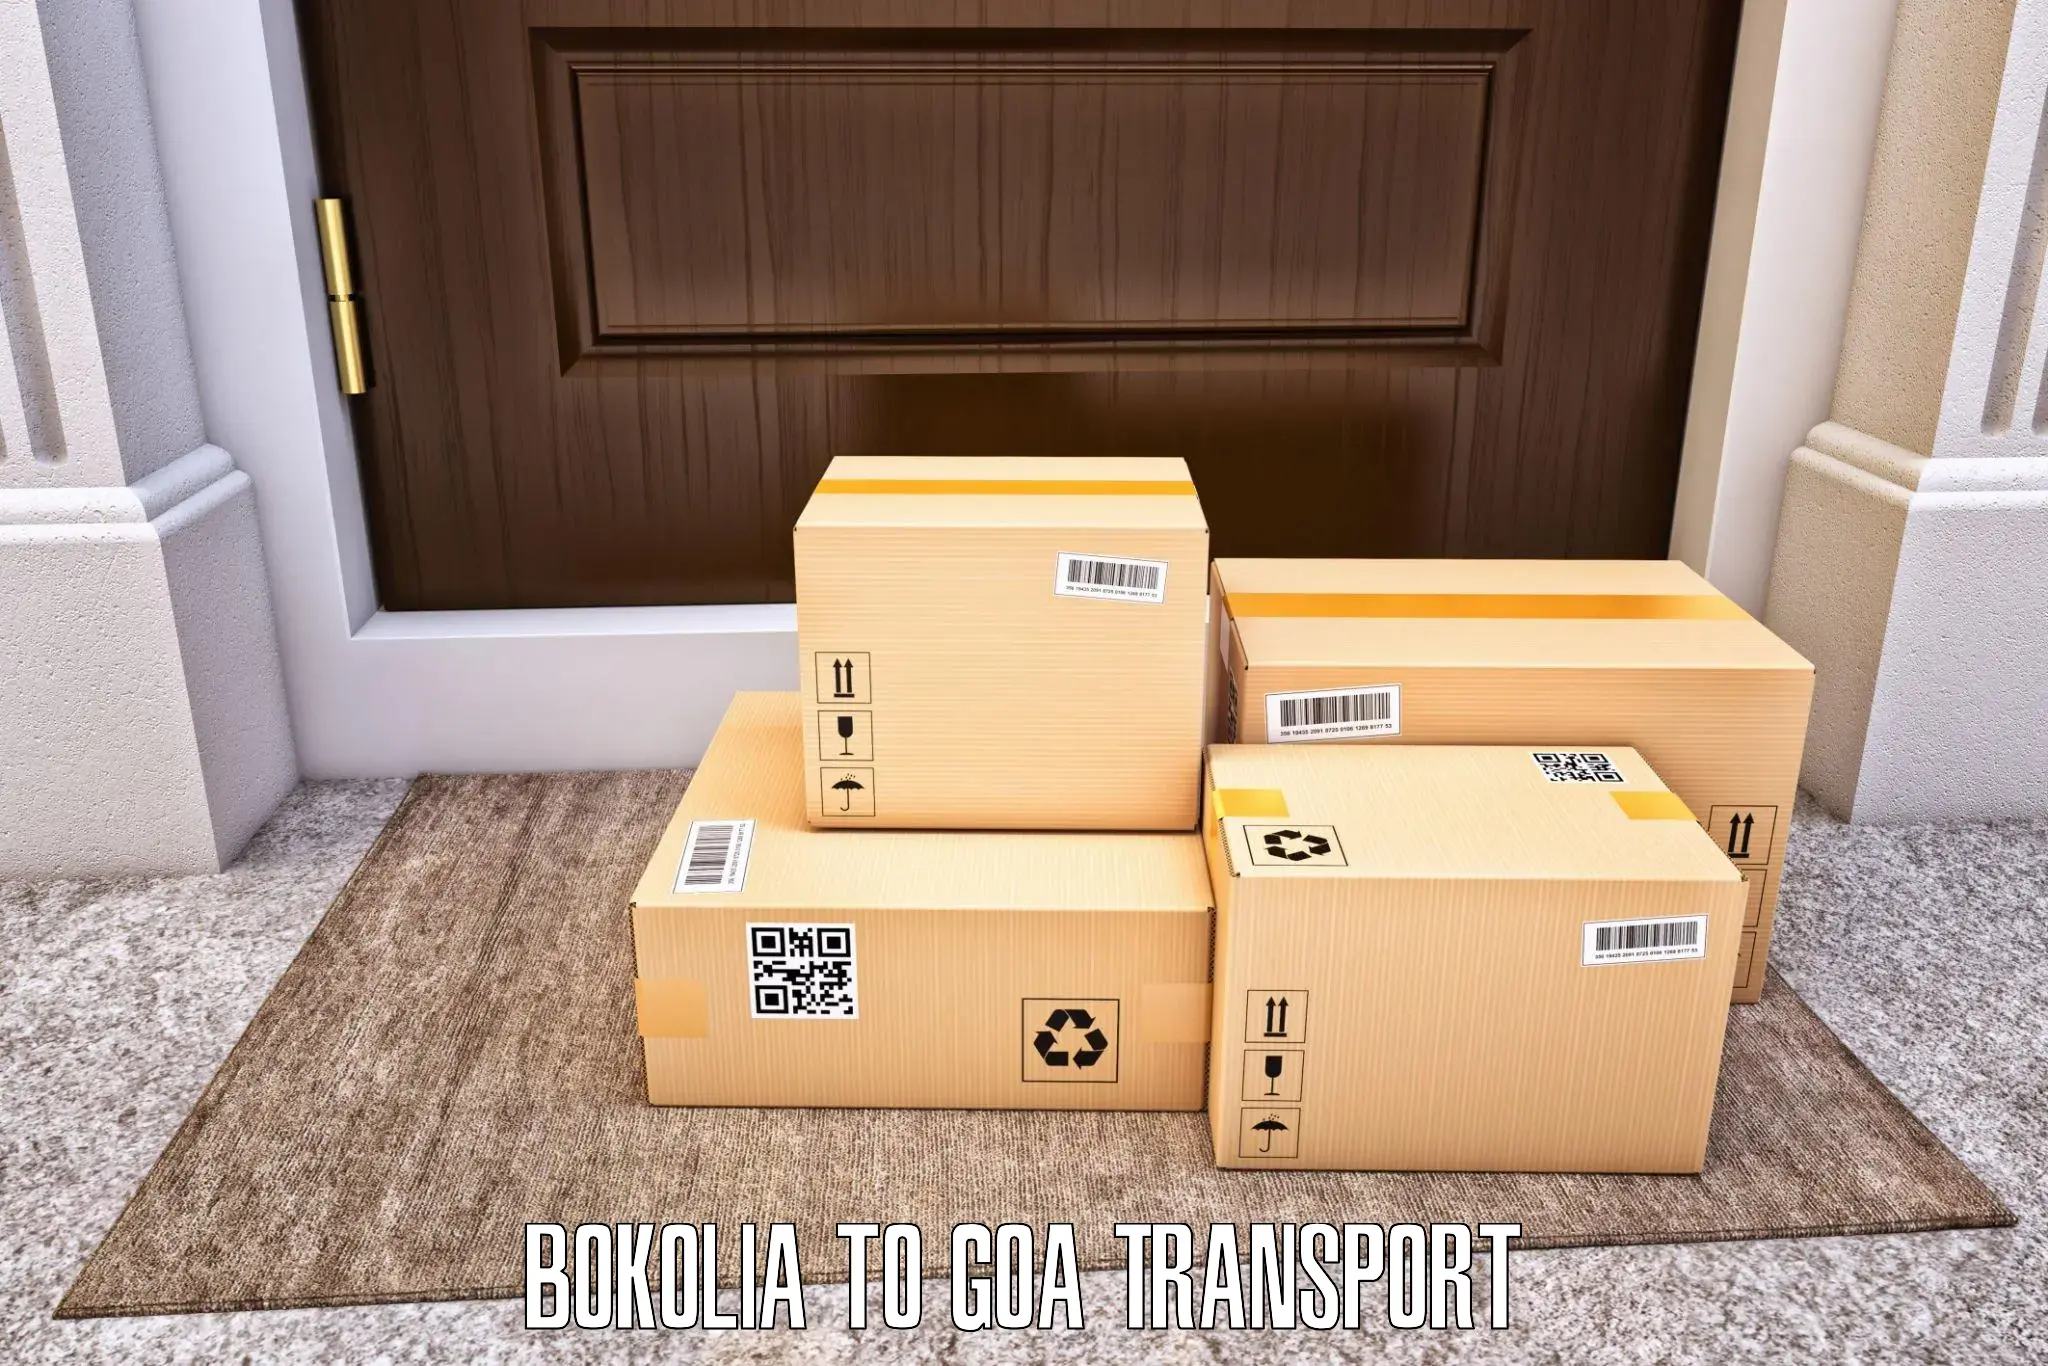 Commercial transport service Bokolia to Canacona